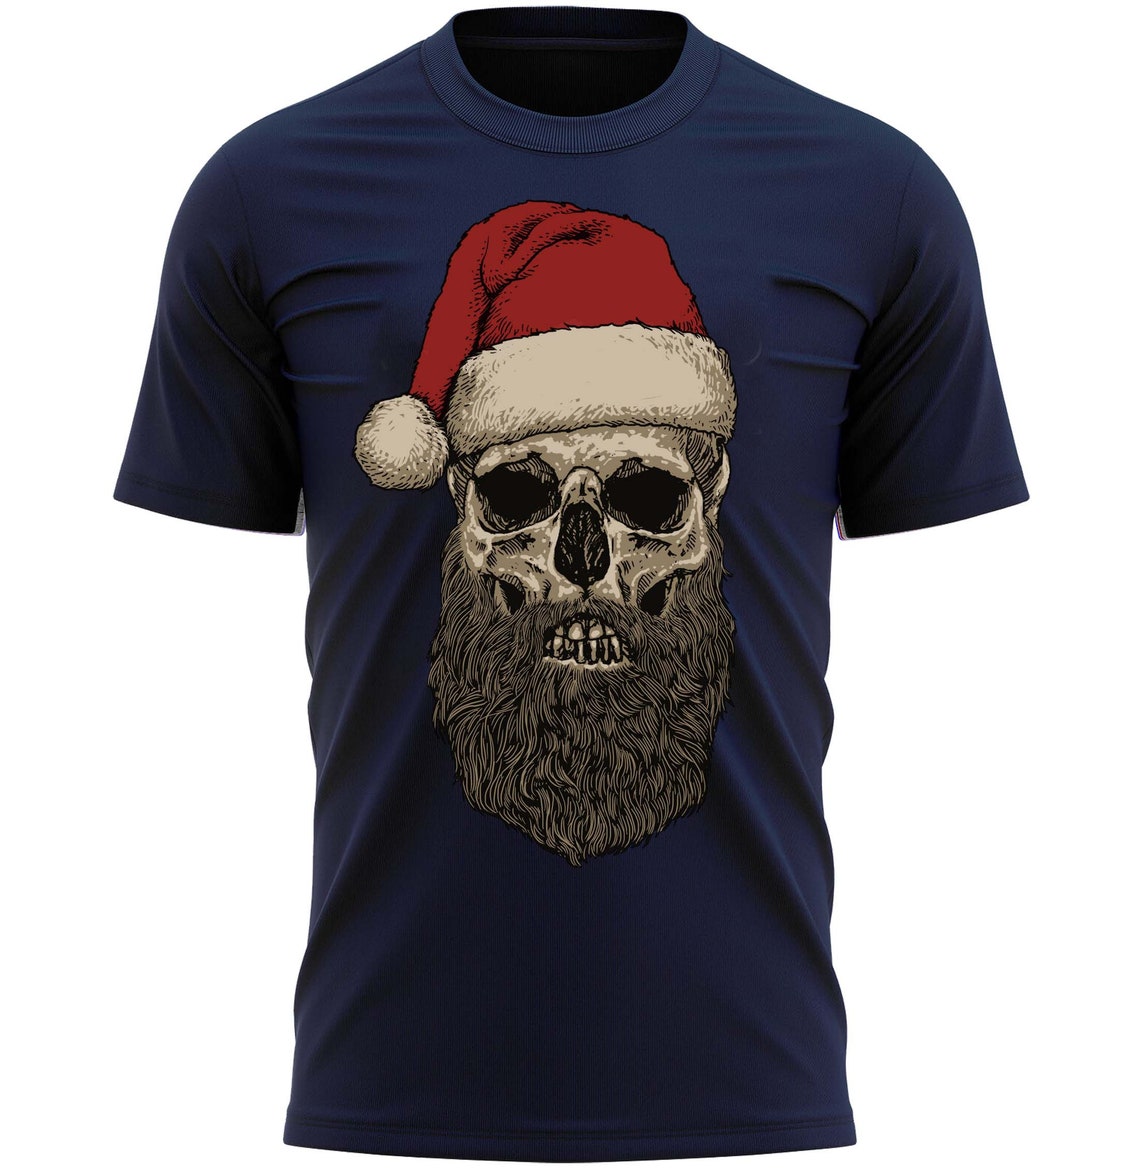 Father Christmas Santa Skull Christmas T-Shirt Funny Xmas Tee Shirt Gift Present